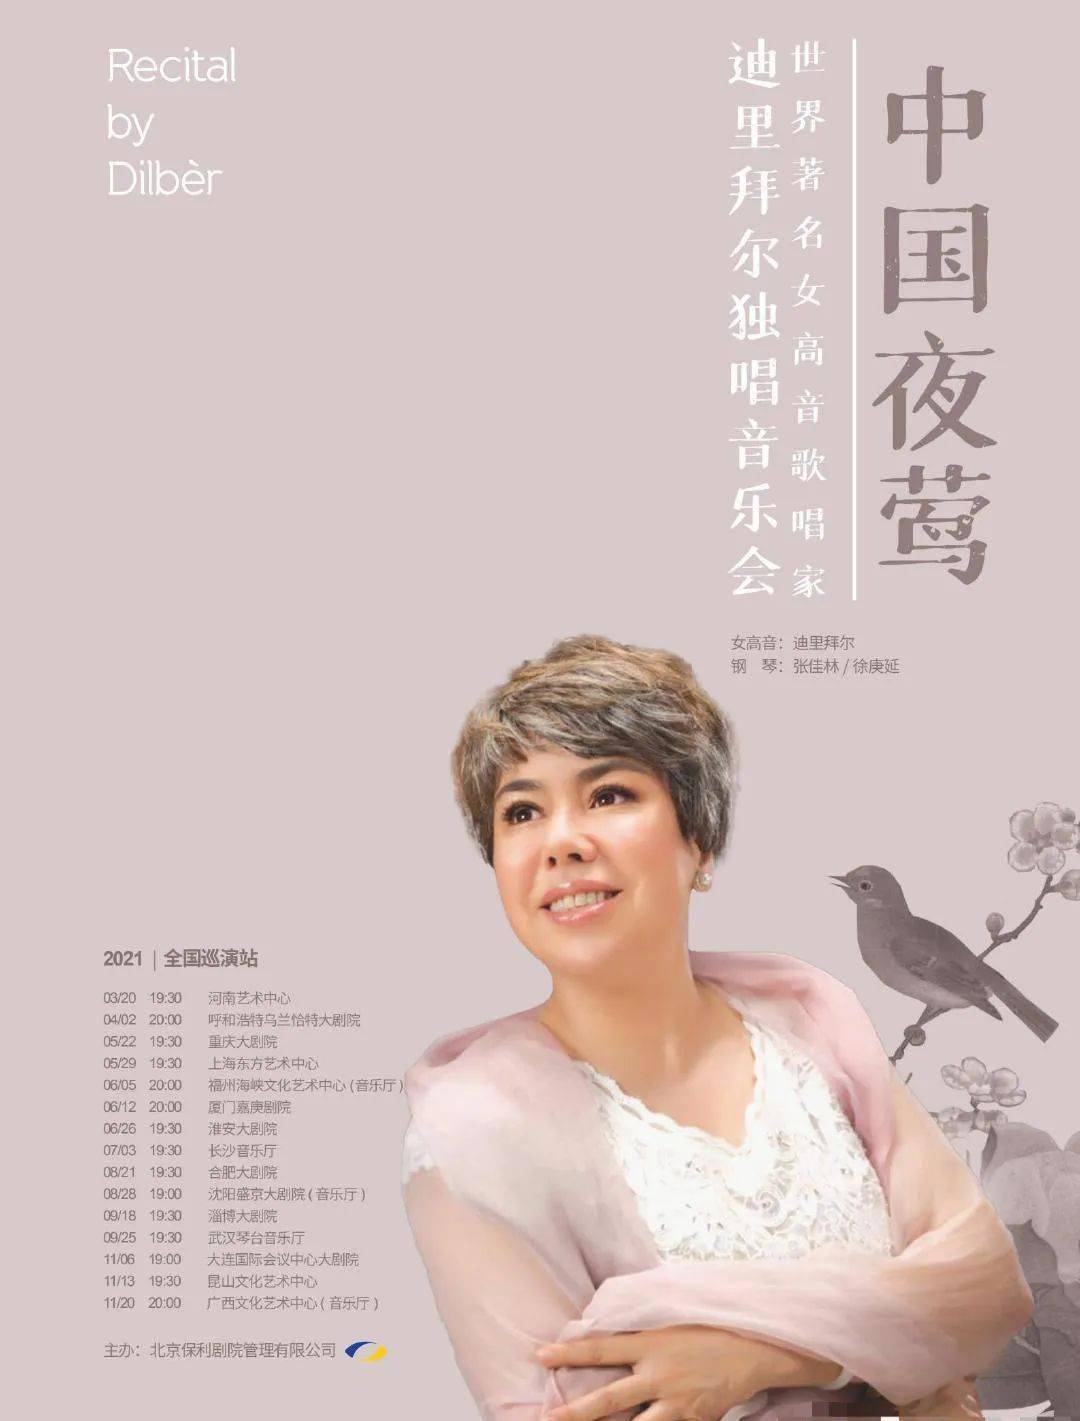 中国夜莺——迪里拜尔独唱音乐会巡演福州,厦门站预告